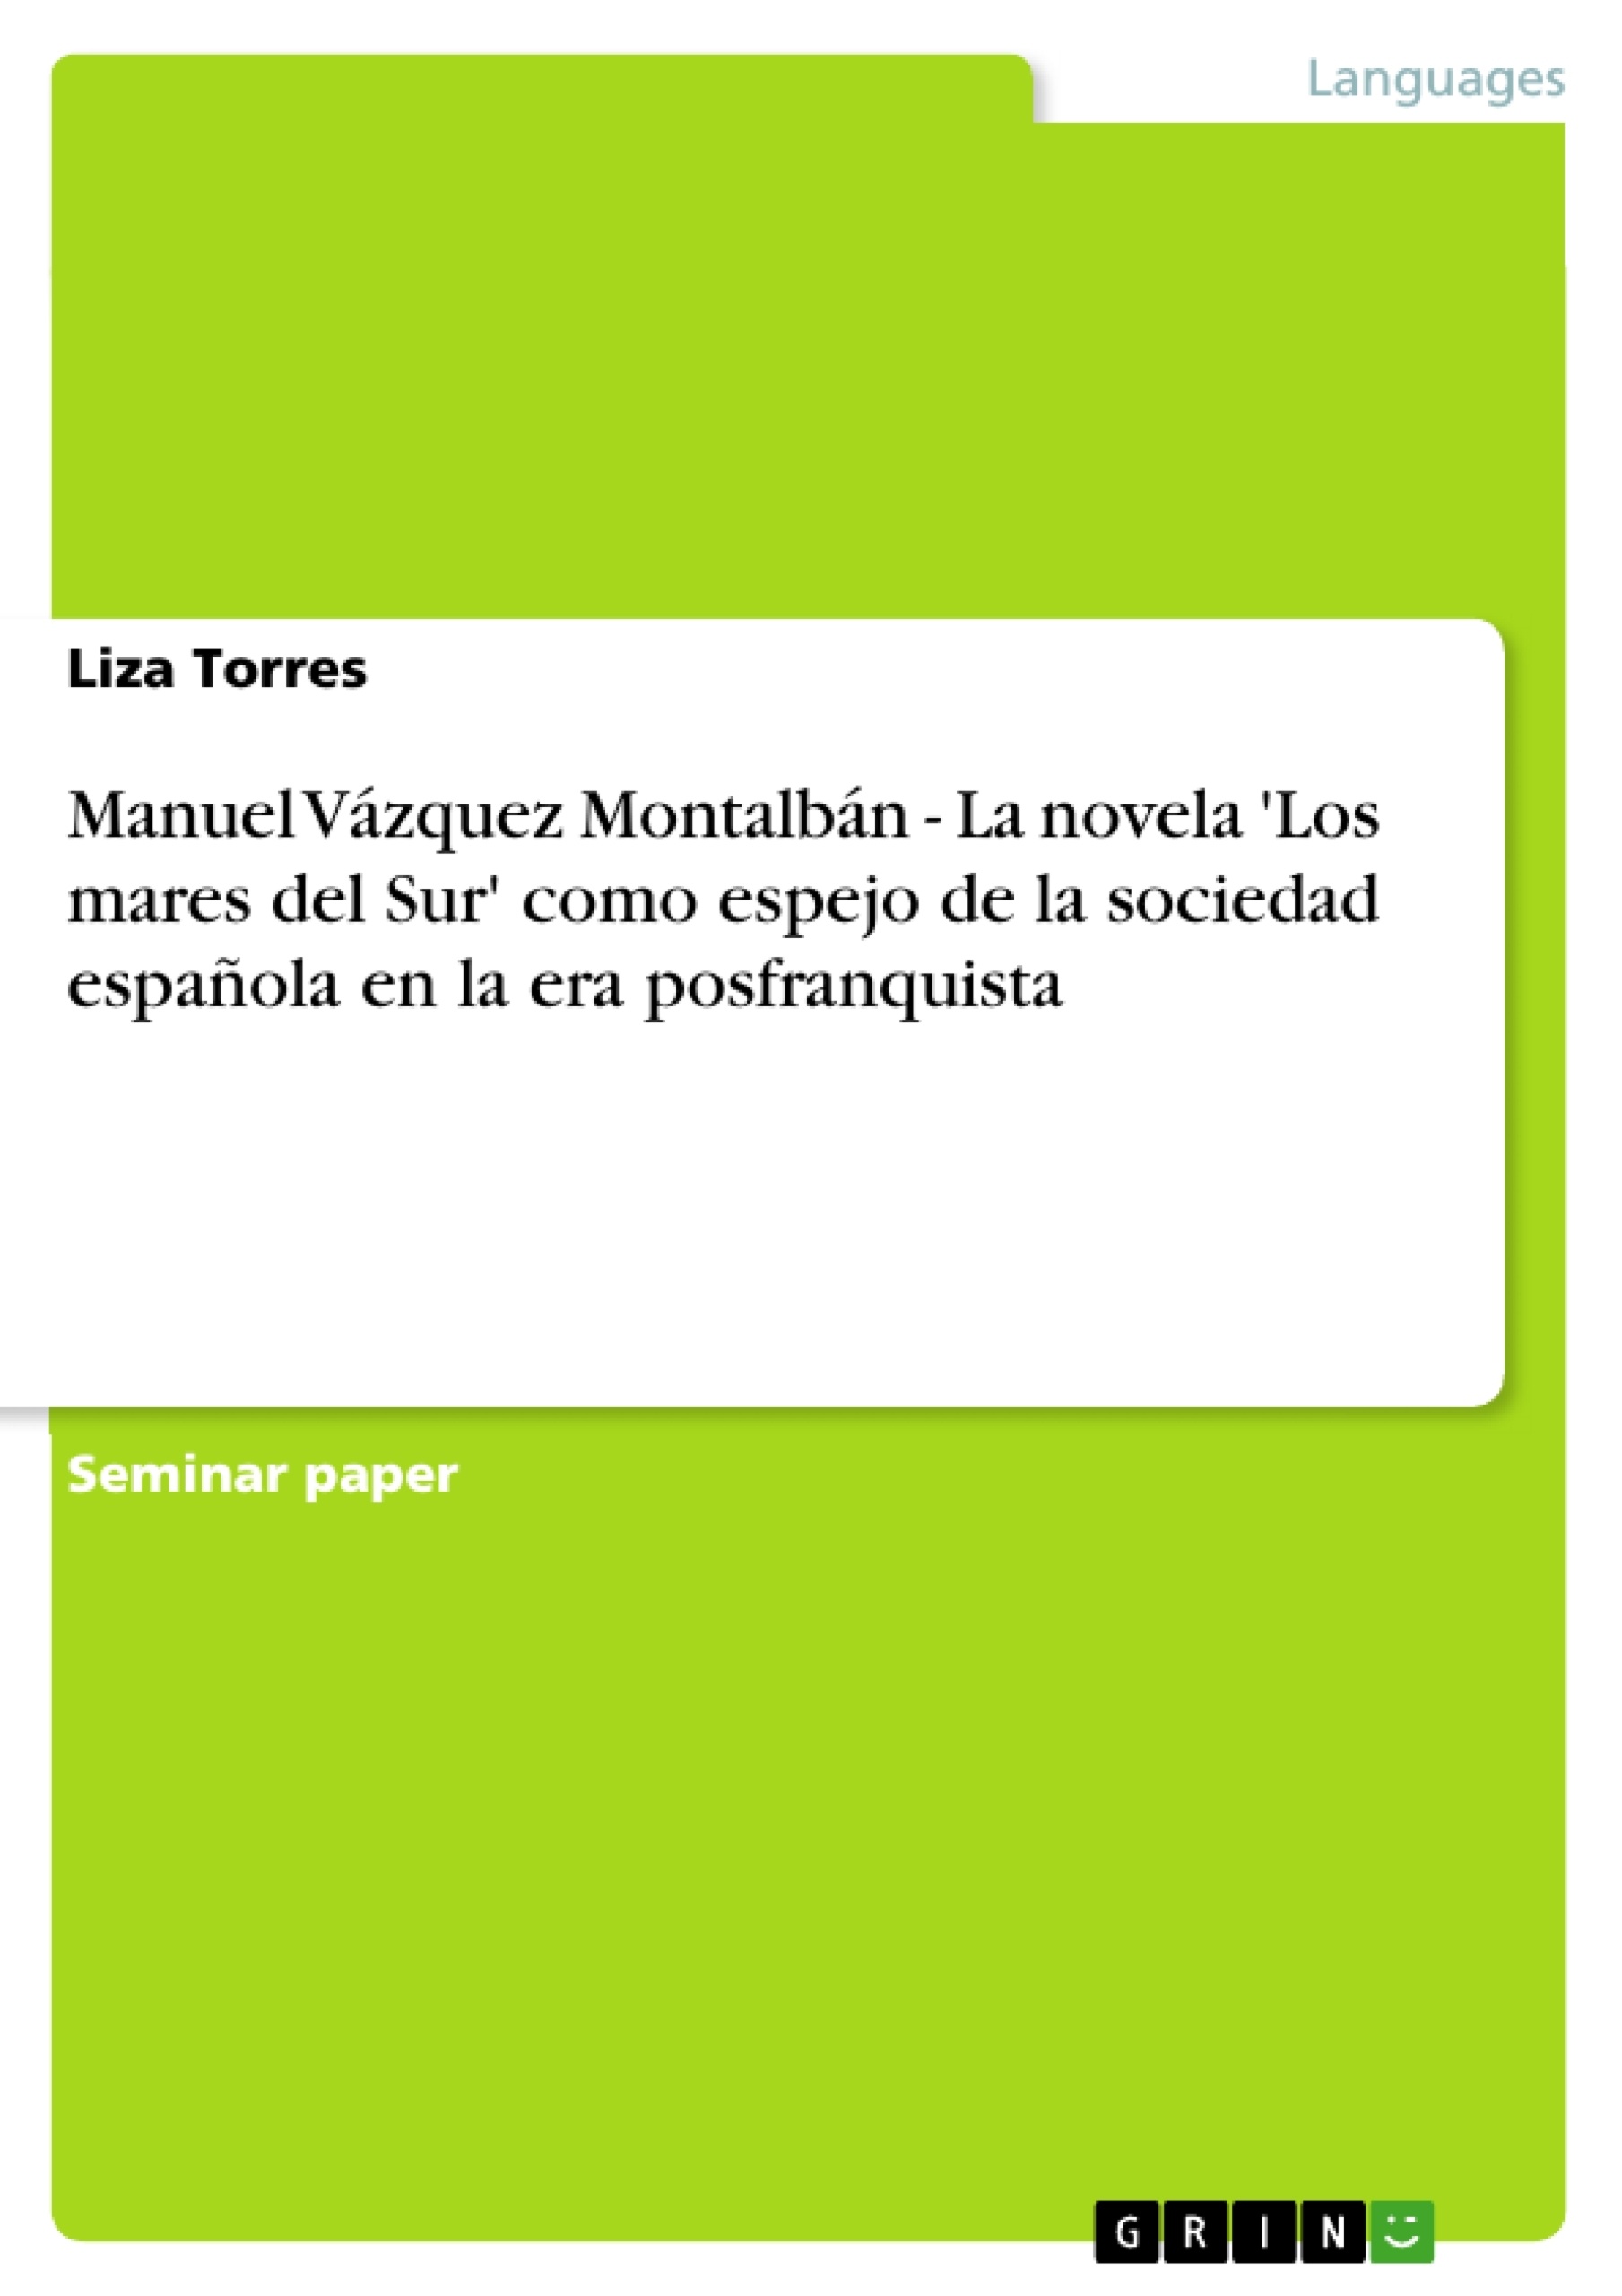 Titre: Manuel Vázquez Montalbán - La novela 'Los mares del Sur' como espejo de la sociedad española en la era posfranquista